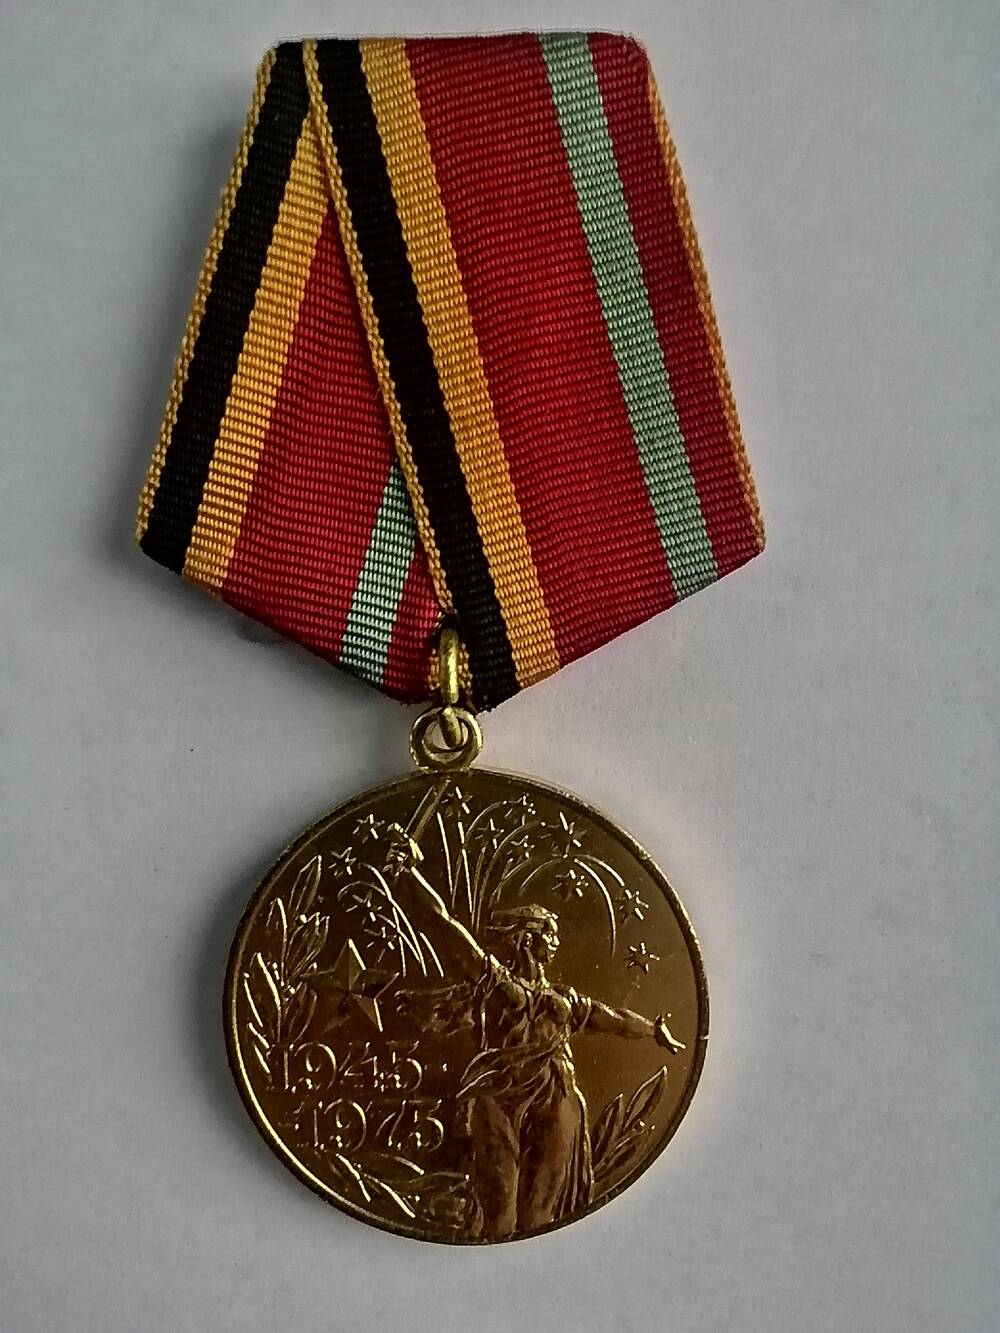 Медаль юбилейная 30 лет Победы в Великой Отечественной войне. Лента на колодке красные с черными, желтыми и зелеными полосками.